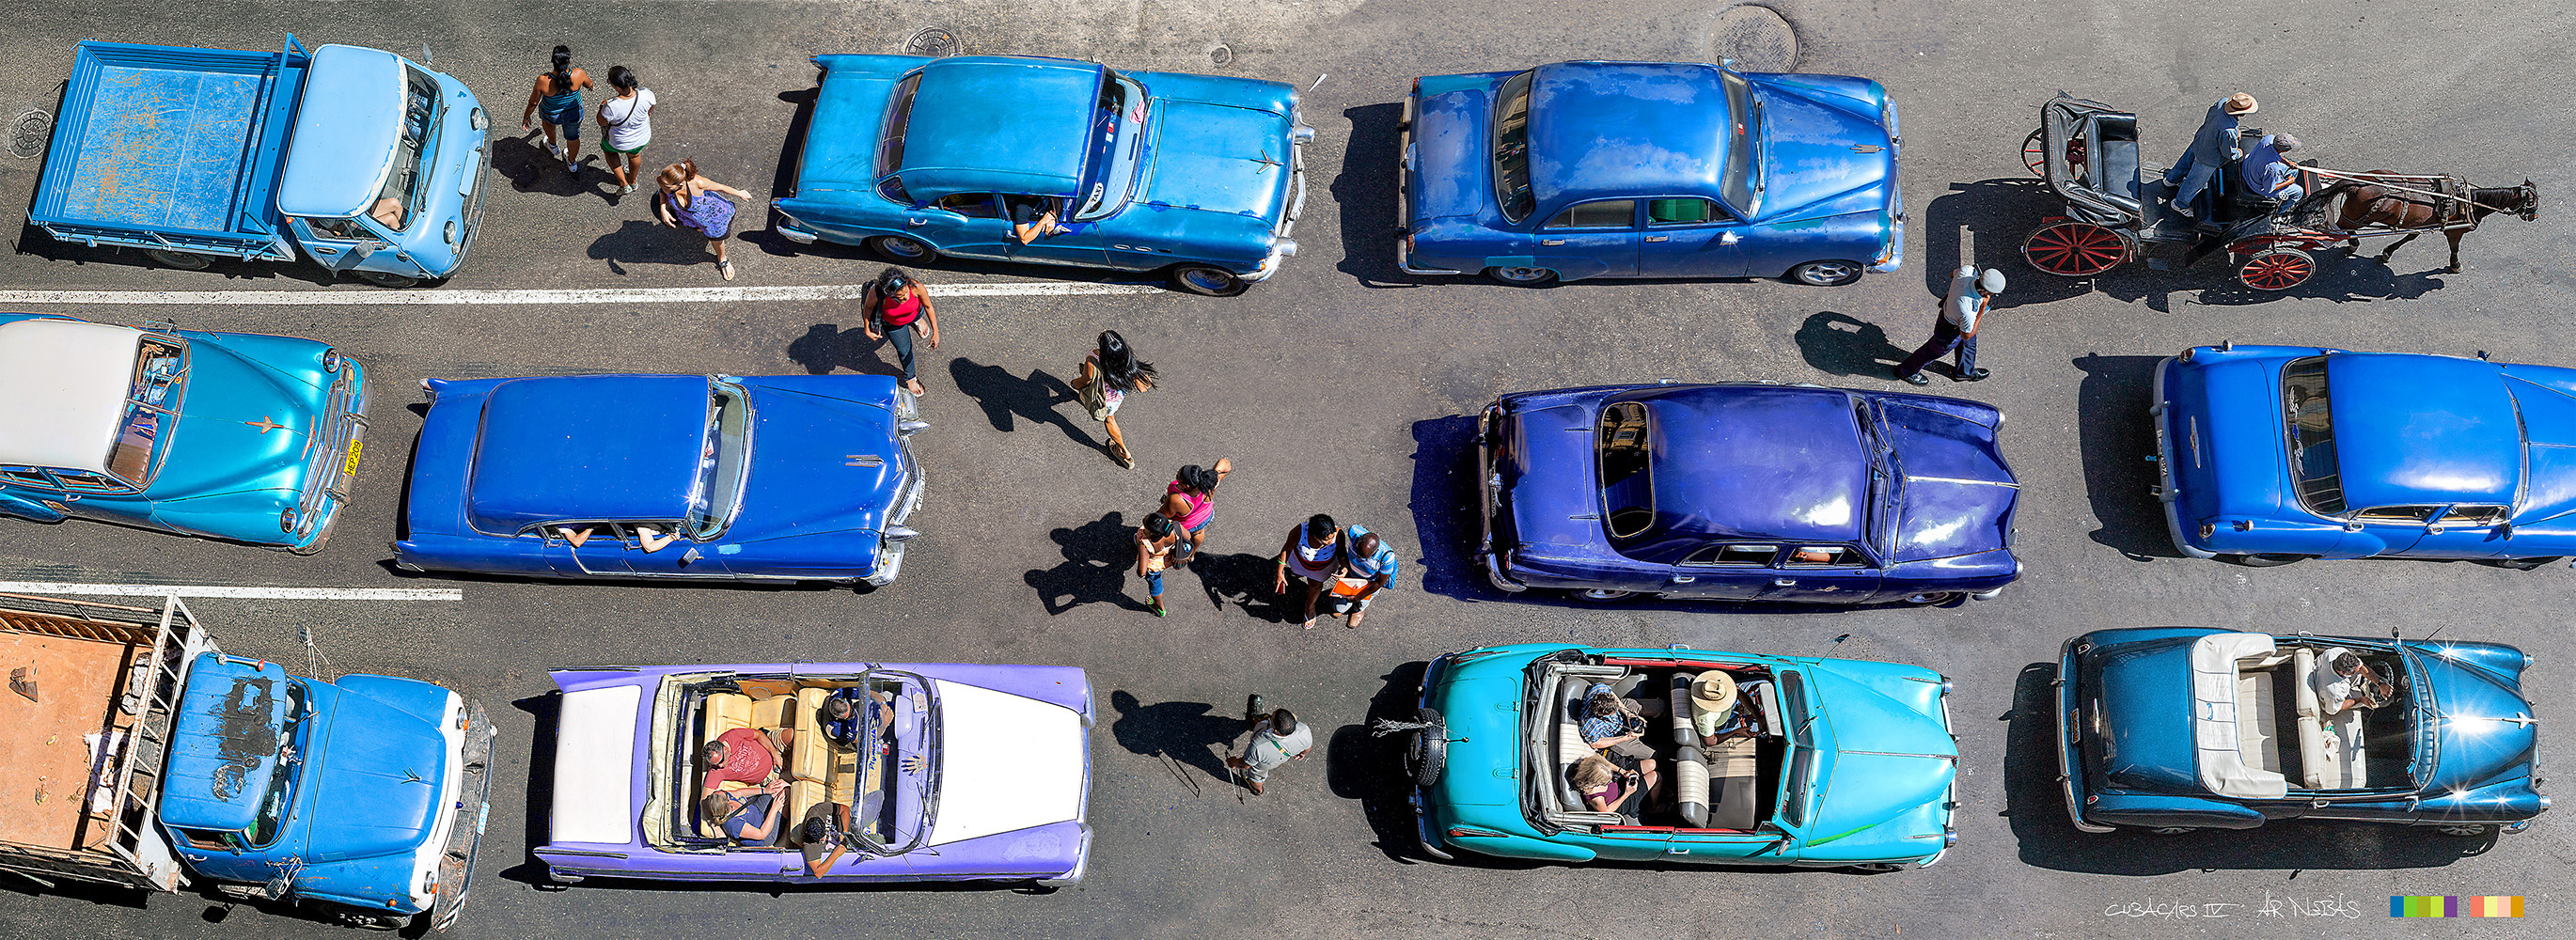 Cuba-Cars IV, 1500 x 600 mm, Fotoprint